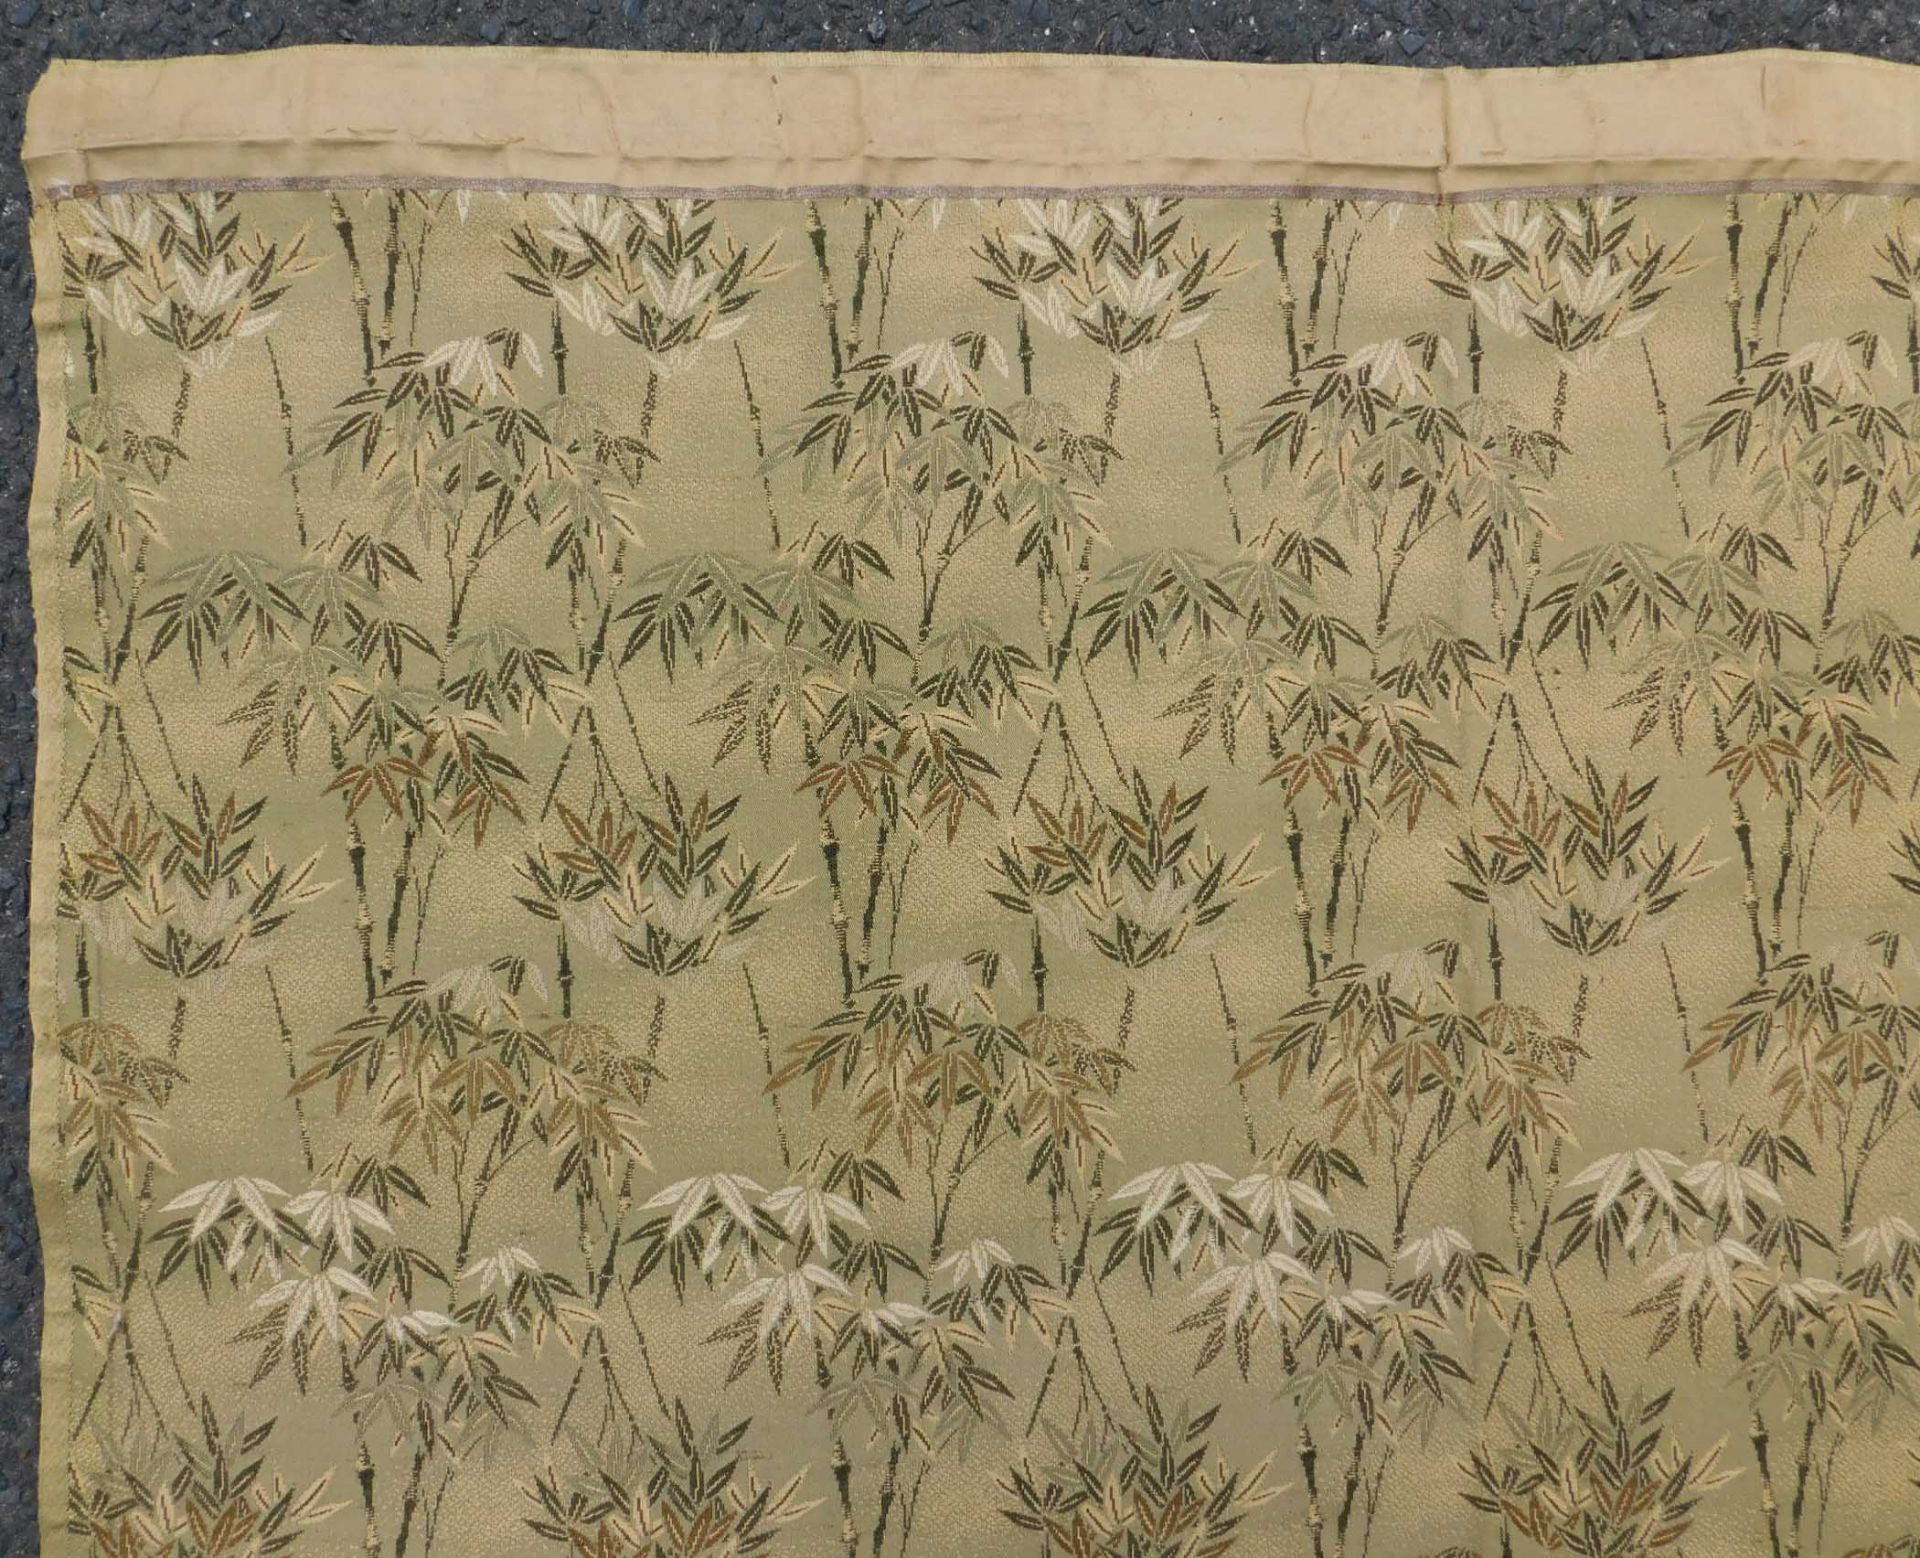 5 Obi Textilien Japan. Wohl alt, teils Seide, gewebt.Bis 205,5 cm x 65 cm.5 Obi Textiles Japan. - Image 6 of 12